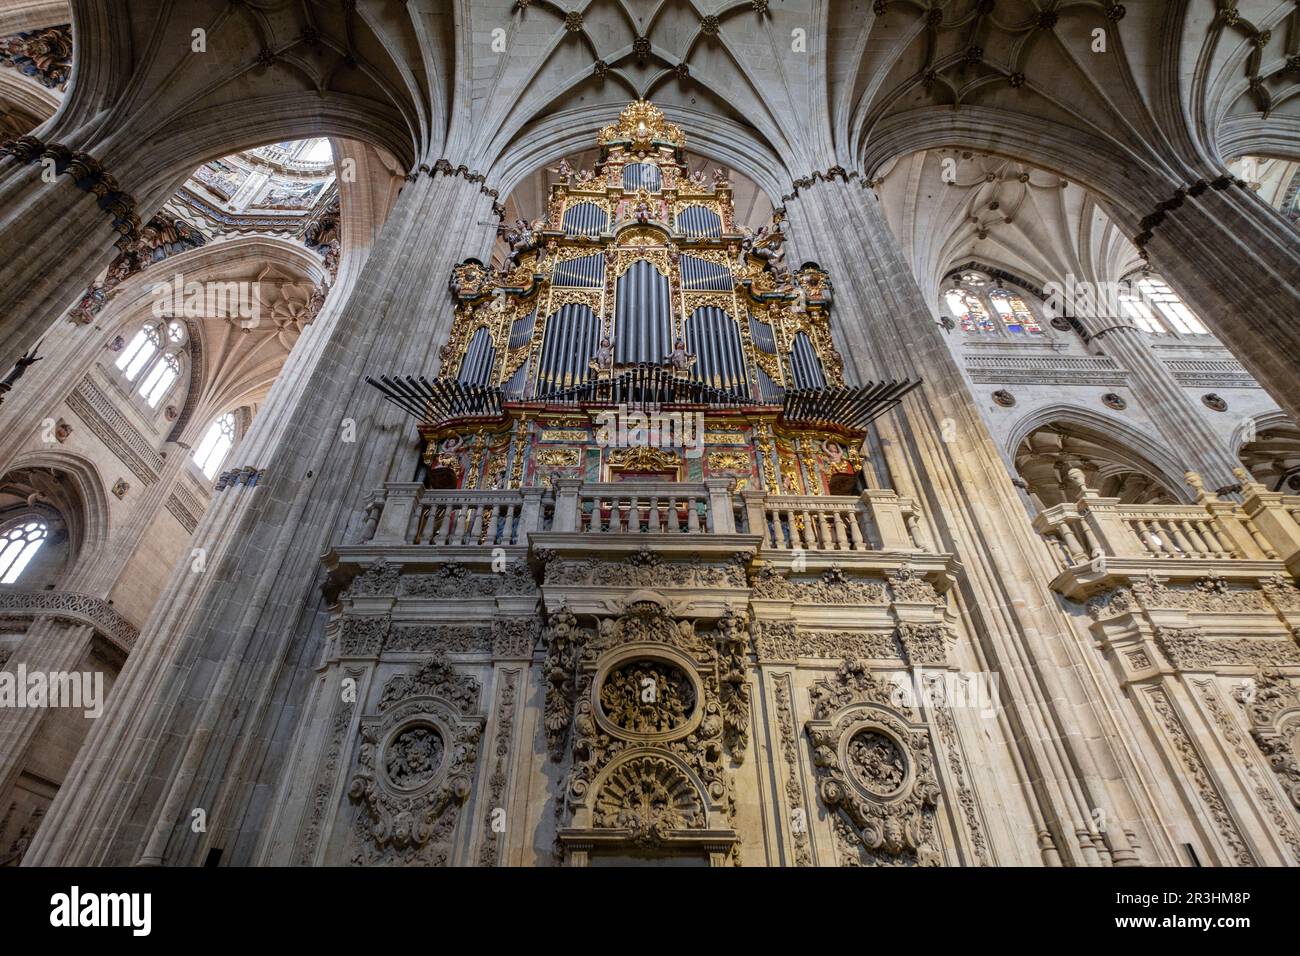 órgano del Evangelio, construido por Pedro de Echevarria en 1744, Catedral de la Asunción de la Virgen, Salamanca, comunidad Autónoma de Castilla y León, Spain. Foto de stock